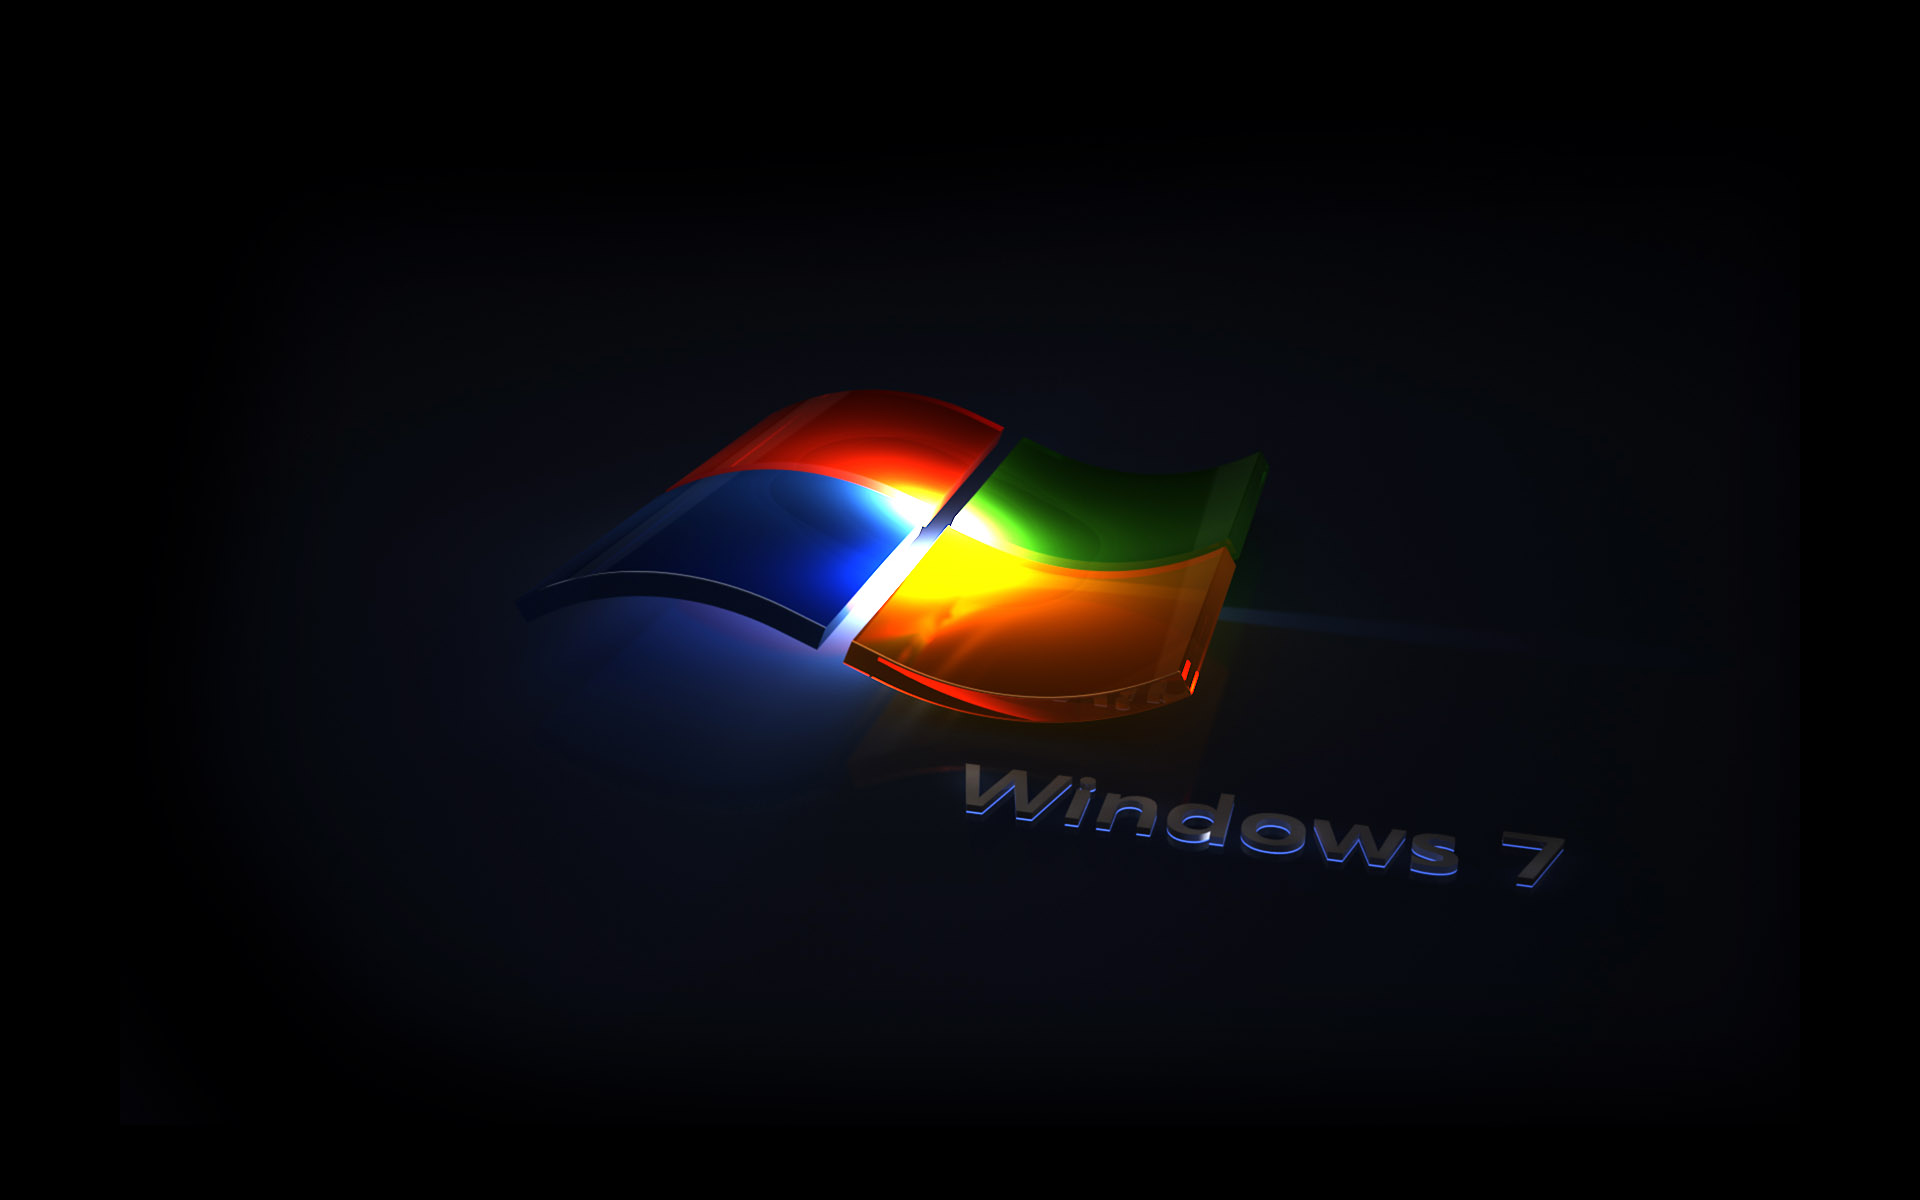 壁纸1920x1200Windows7 5 18壁纸 Windows7壁纸 Windows7图片 Windows7素材 系统壁纸 系统图库 系统图片素材桌面壁纸